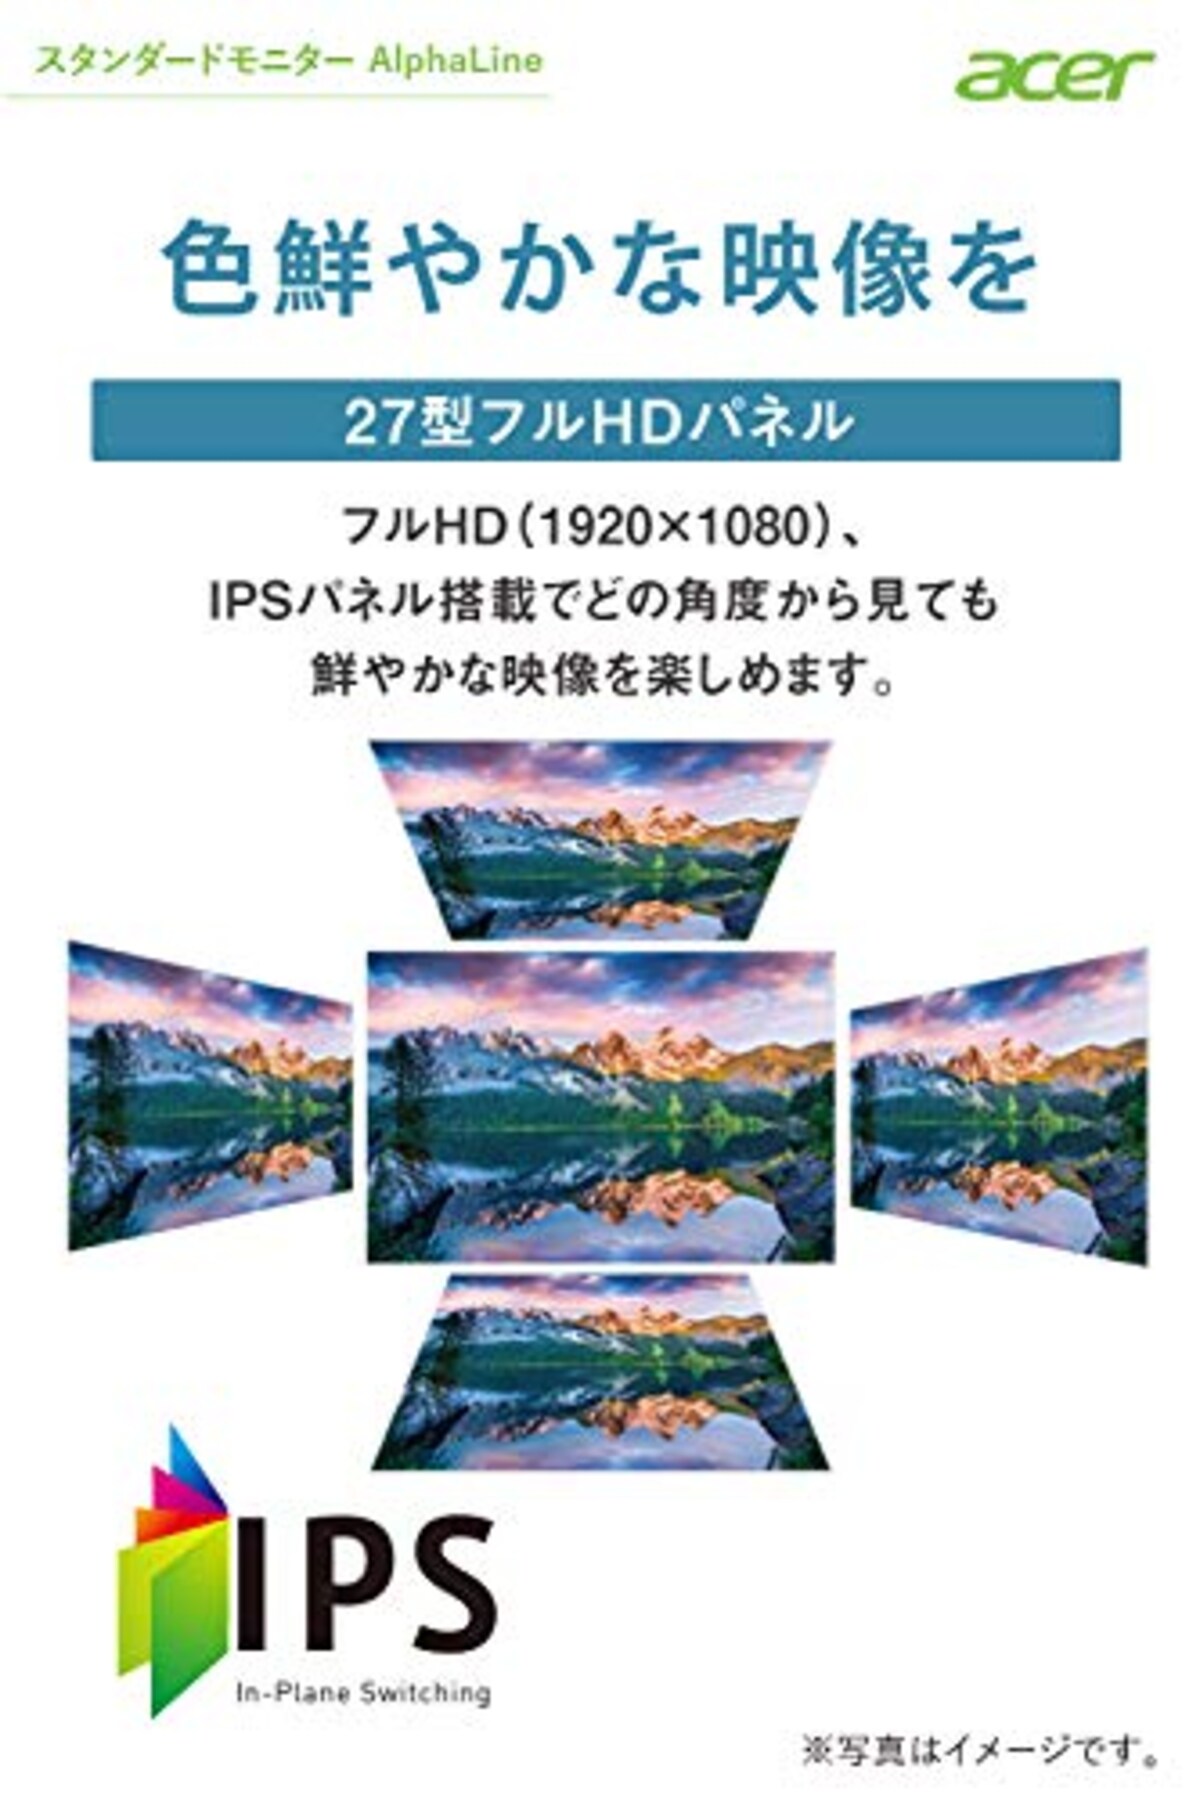  日本エイサー Acer モニター AlphaLine CB272bmiprx 27インチ IPS 非光沢 フルHD 1ms(VRB)75Hz フレームレスデザイン スピーカー内蔵 AMD FreeSync VESAマウント対応 高さ調整 チルト スイベル ピボッド機能 フリッカーレス ブルーライト軽減 フレームレスデザイン画像2 